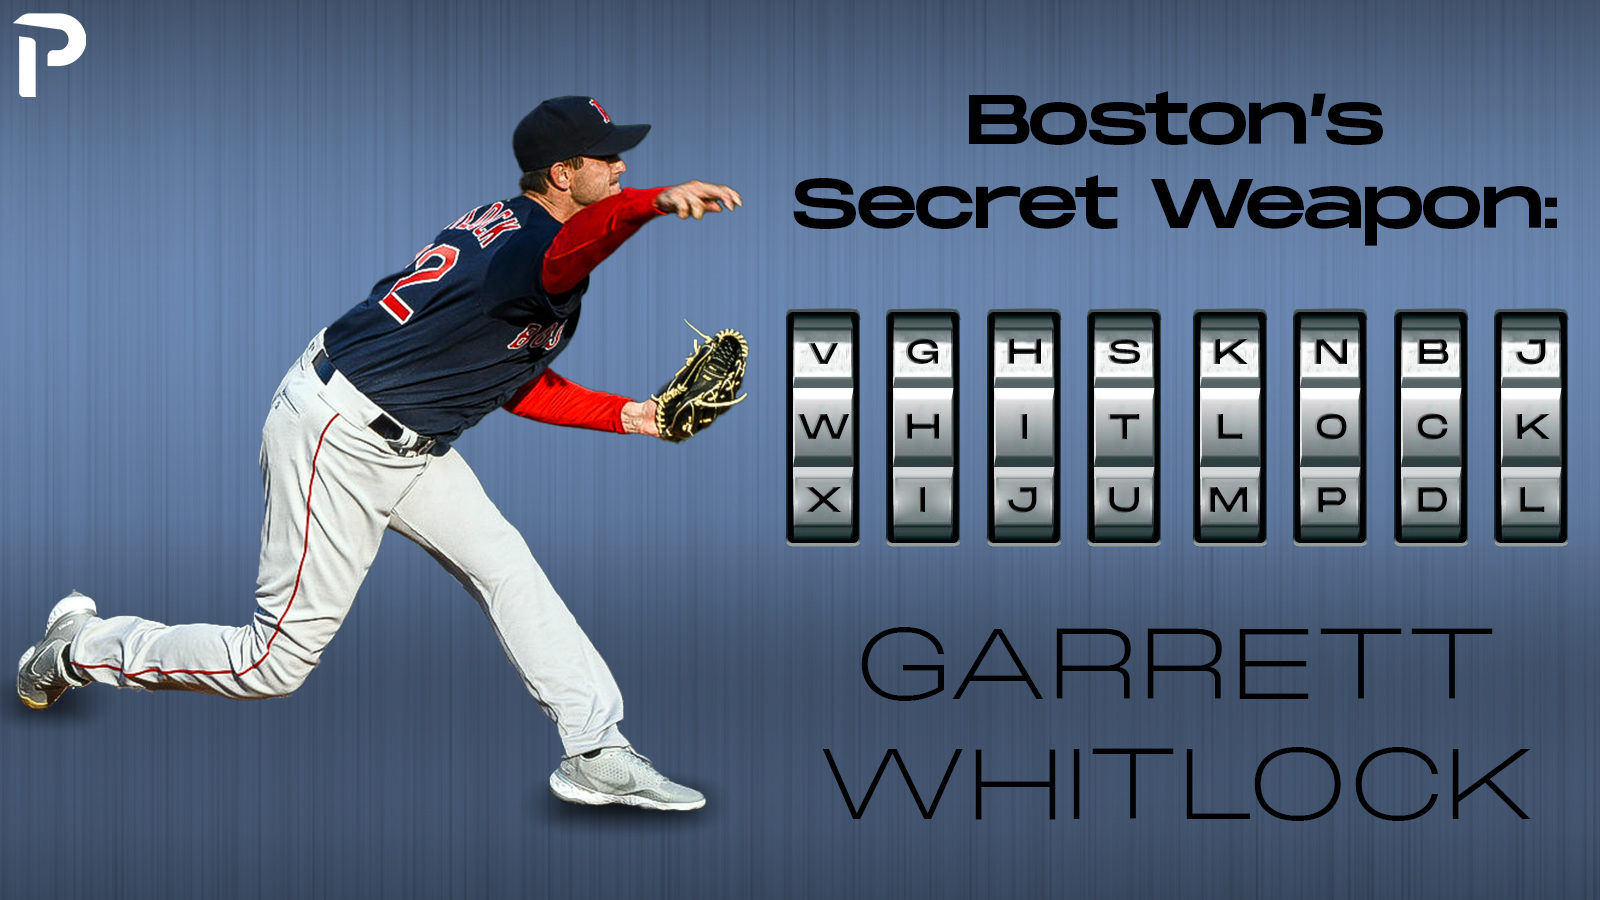 The Sox have a secret weapon